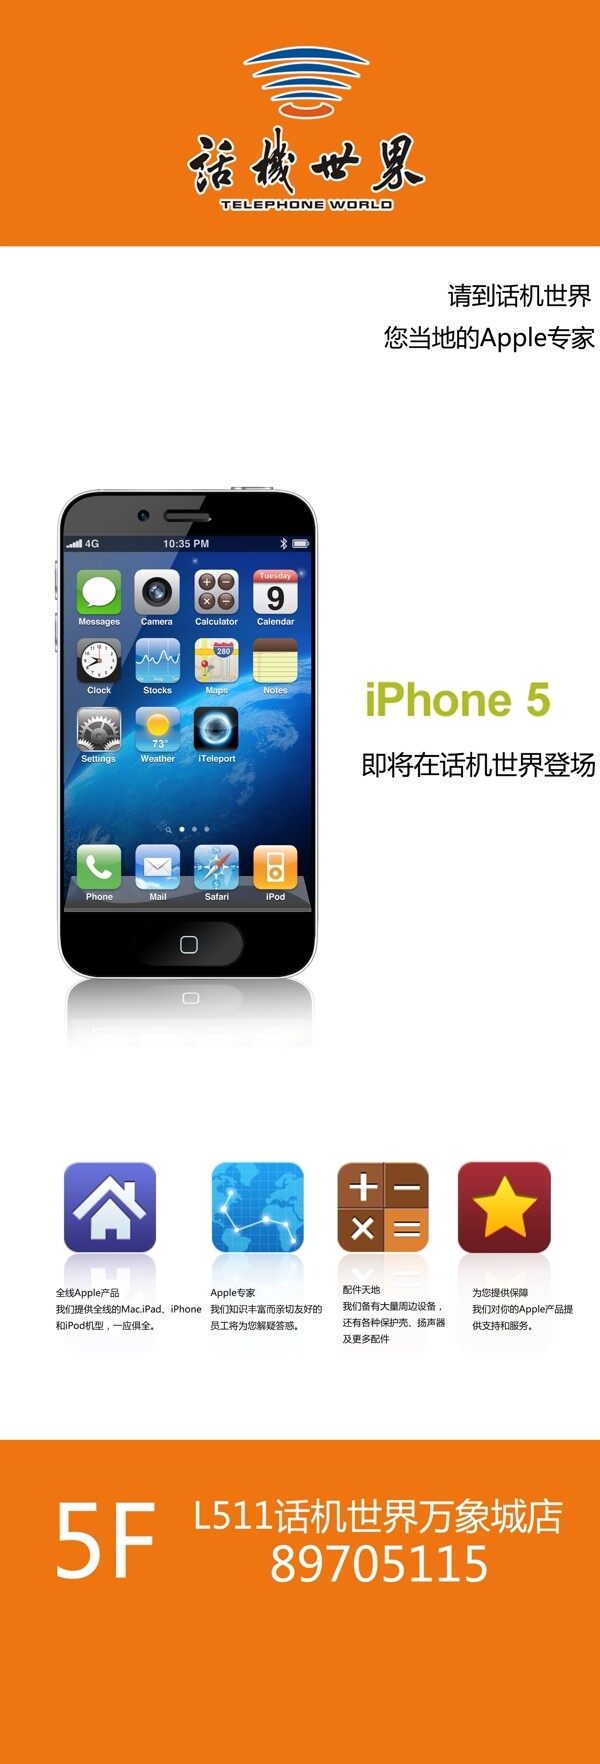 iphone5手机高清图图片